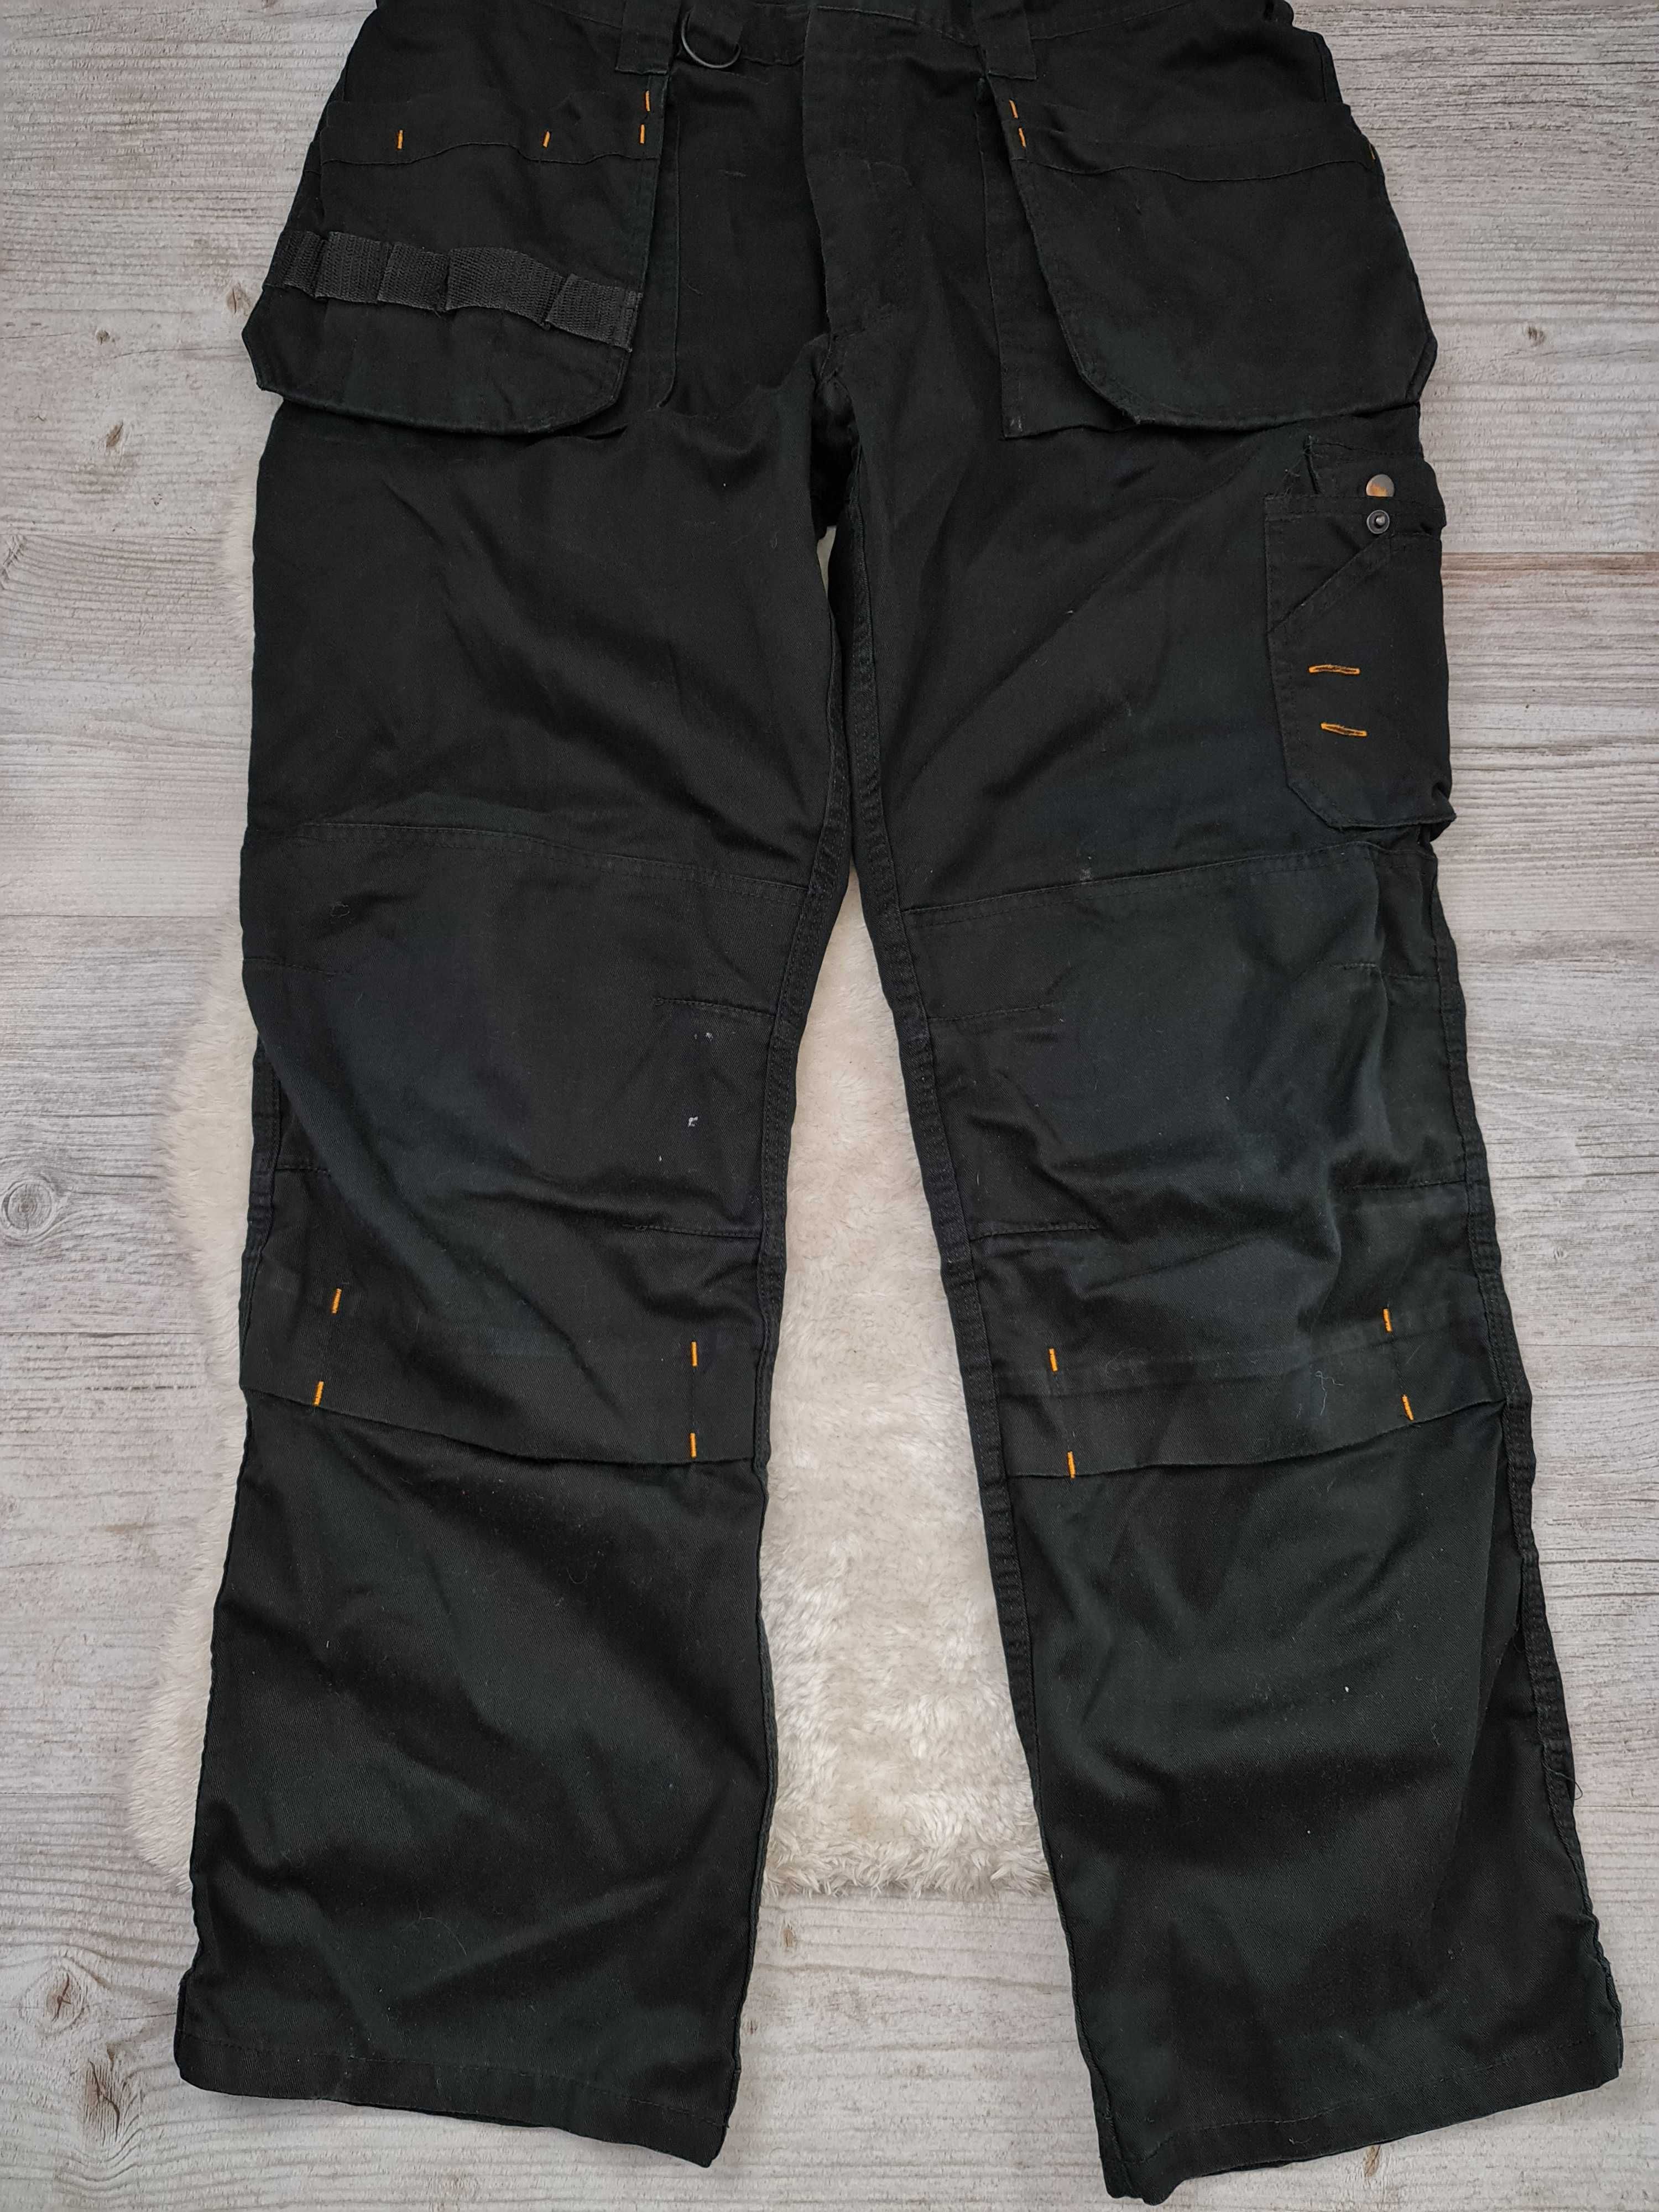 Spodnie Robocze Scruffs Czarne Rozmiar 38 / 32 M Oryginalne